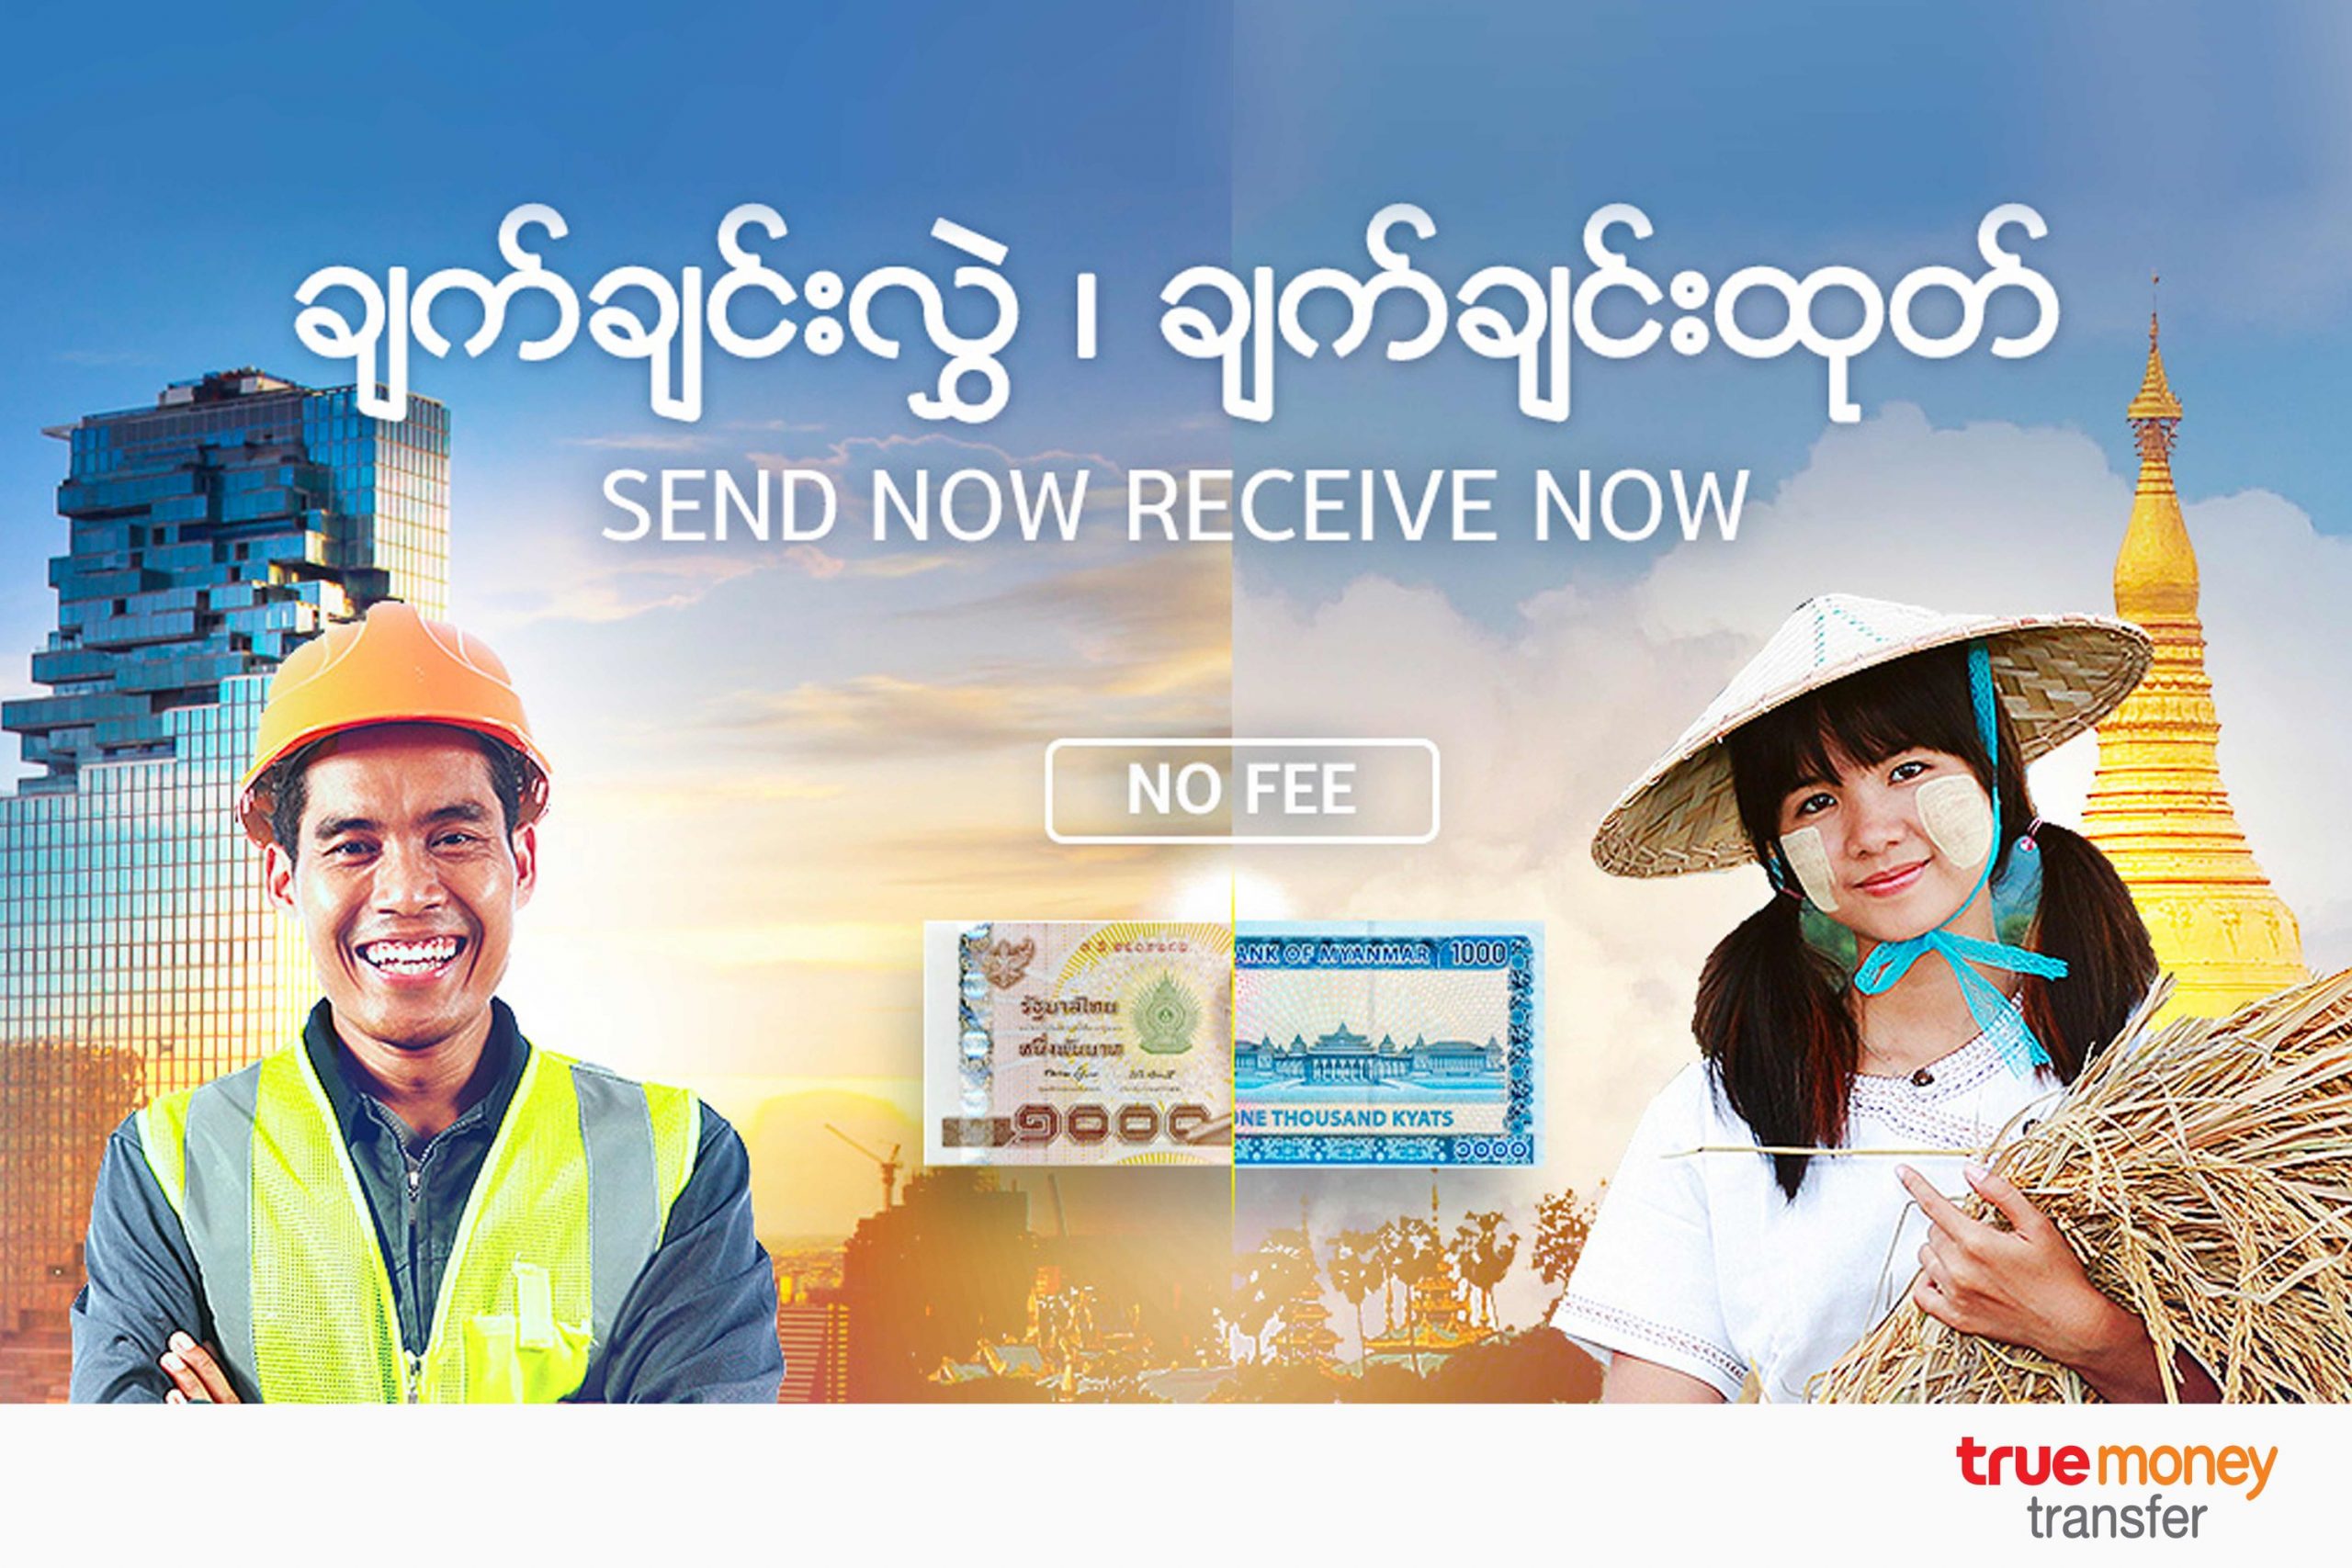 ทรูมันนี่รุกขยายฐานผู้ใช้ชาวต่างชาติ เปิด 'TrueMoney Wallet for Foreigners' ชูเวอร์ชั่นภาษาพม่า รุกเจาะกลุ่มแรงงานชาวเมียนมาร์ในไทย